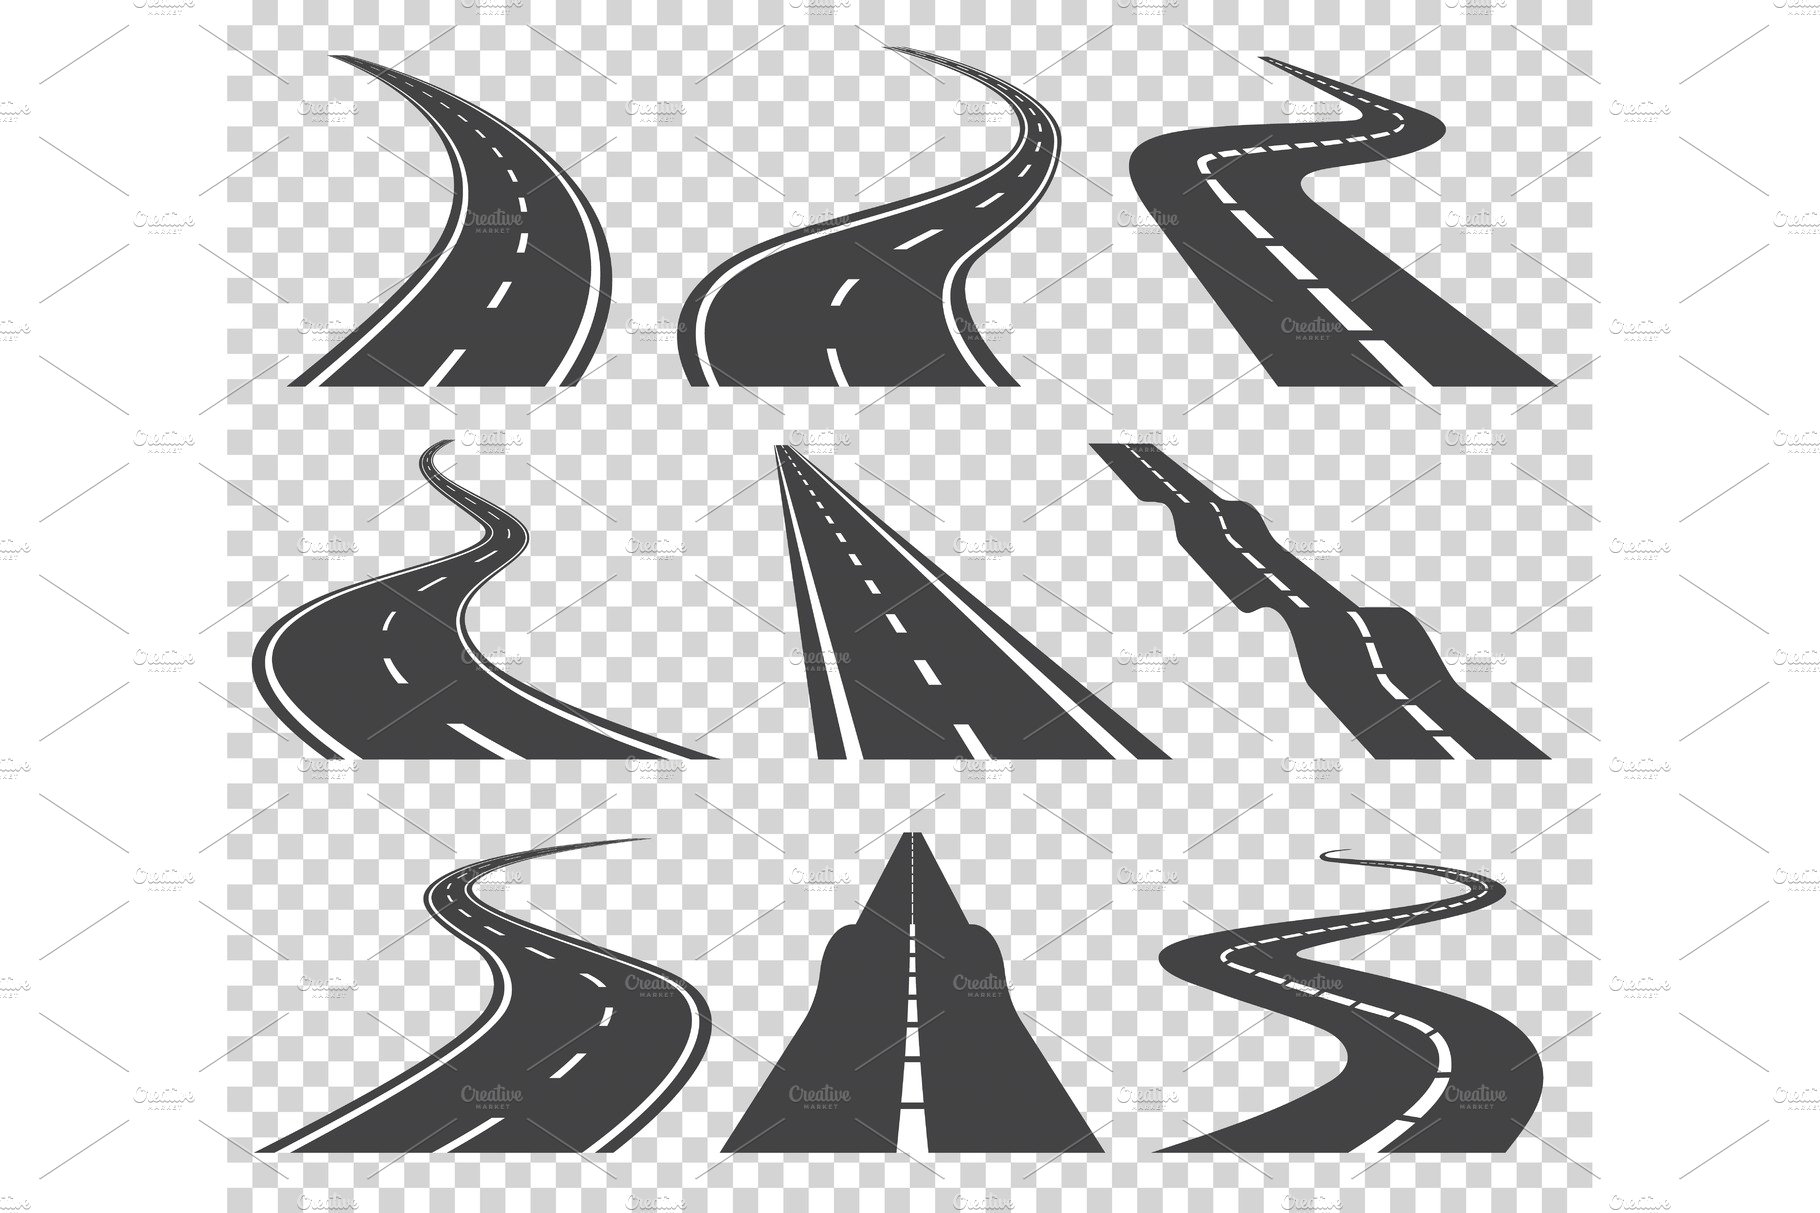 Curved roads vector set. Asphalt cover image.